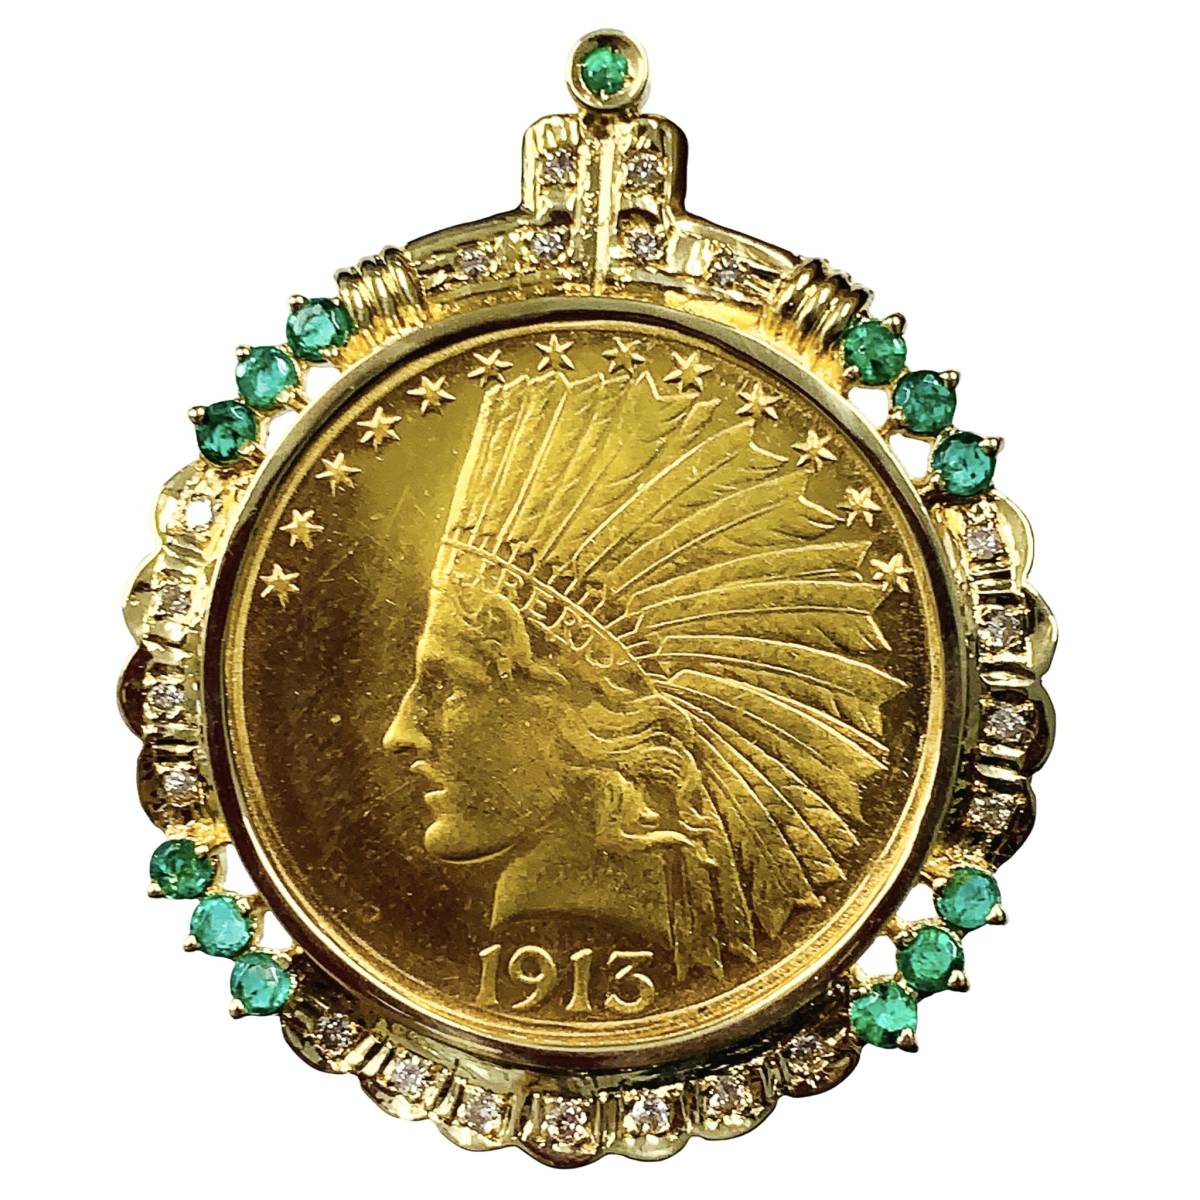 インディアン イーグル金貨 1913年 22.8g アメリカ K18/21.6 ダイヤモンド0.27 エメラルド イエローゴールド コイントップ